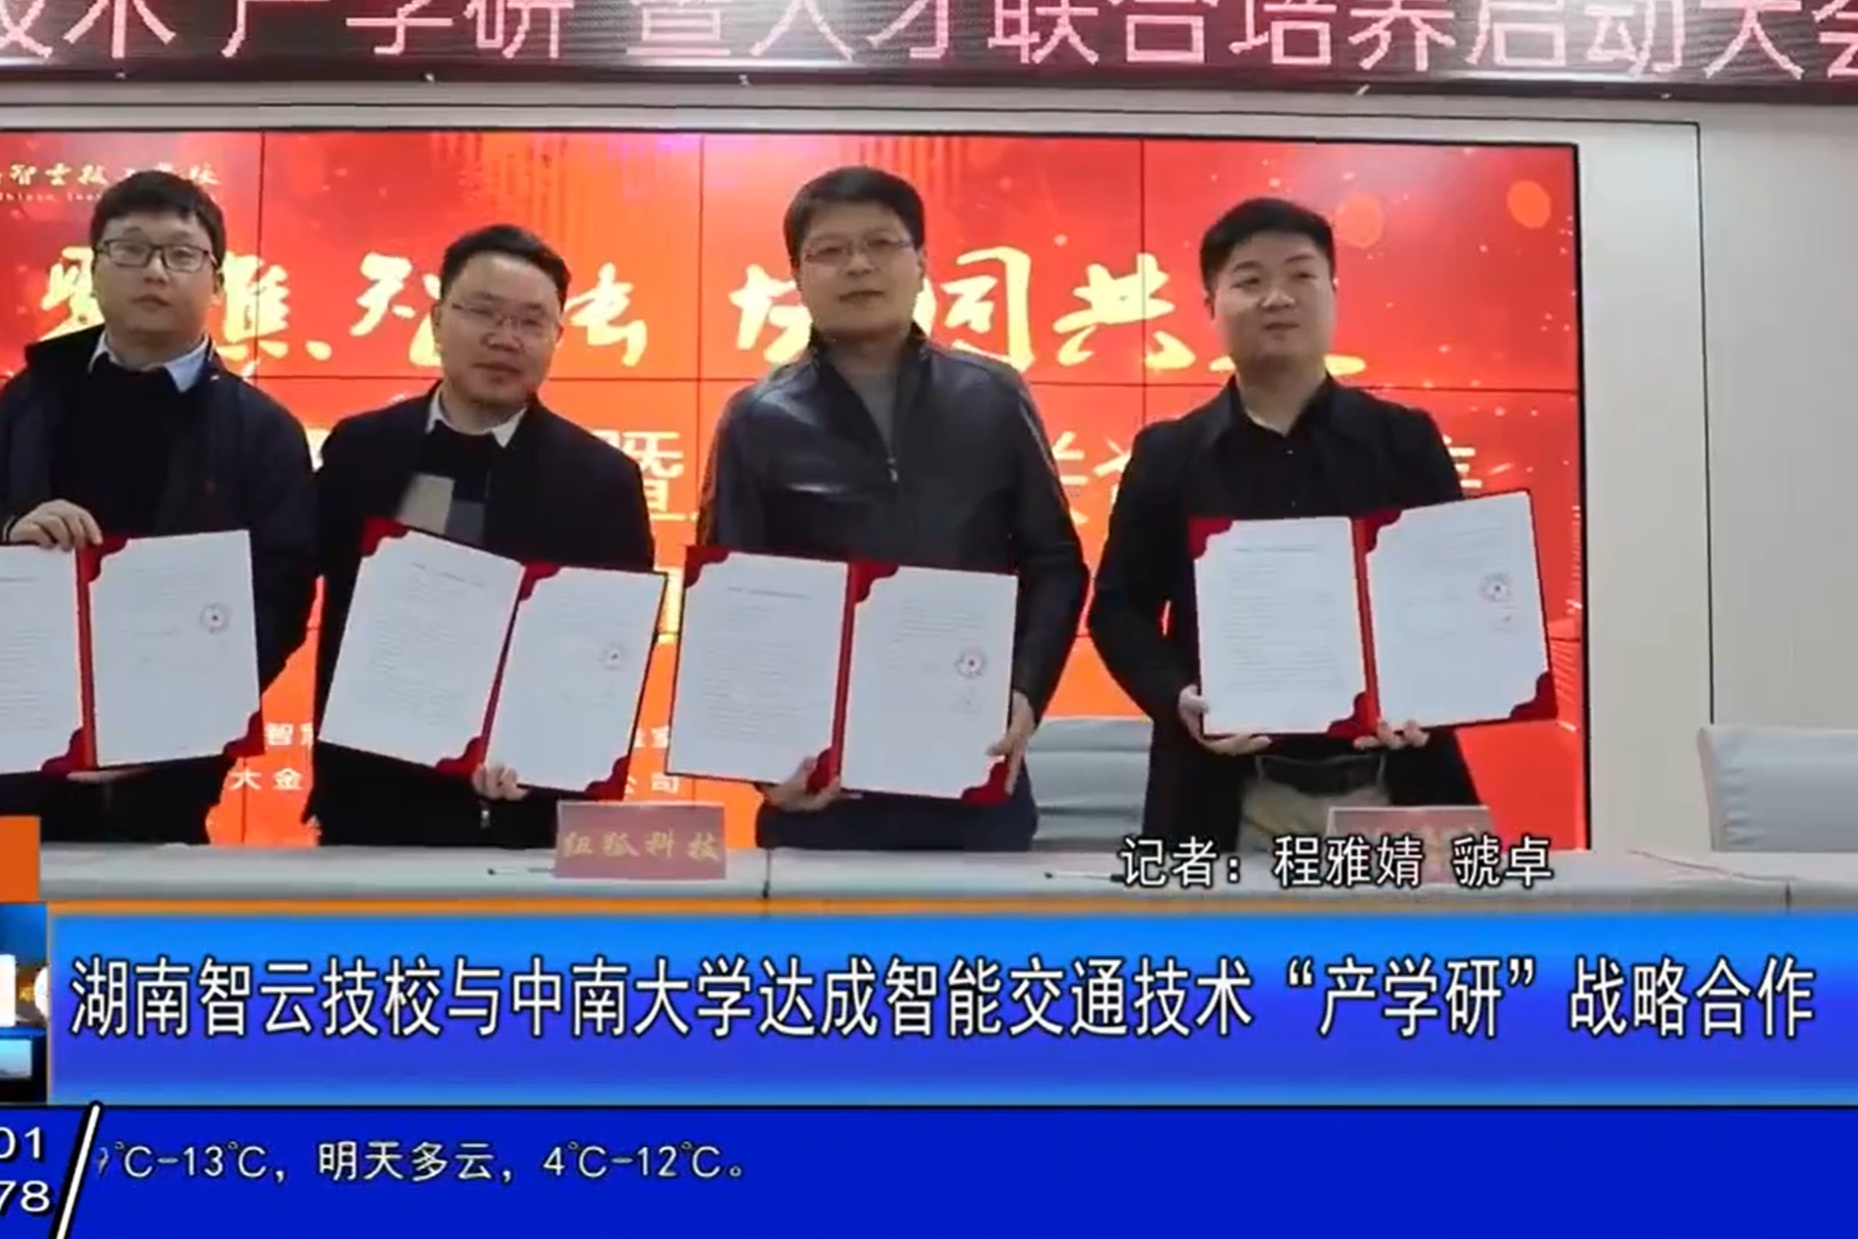 合作--我校与中南大学智慧交通湖南省重点实验室签订协议